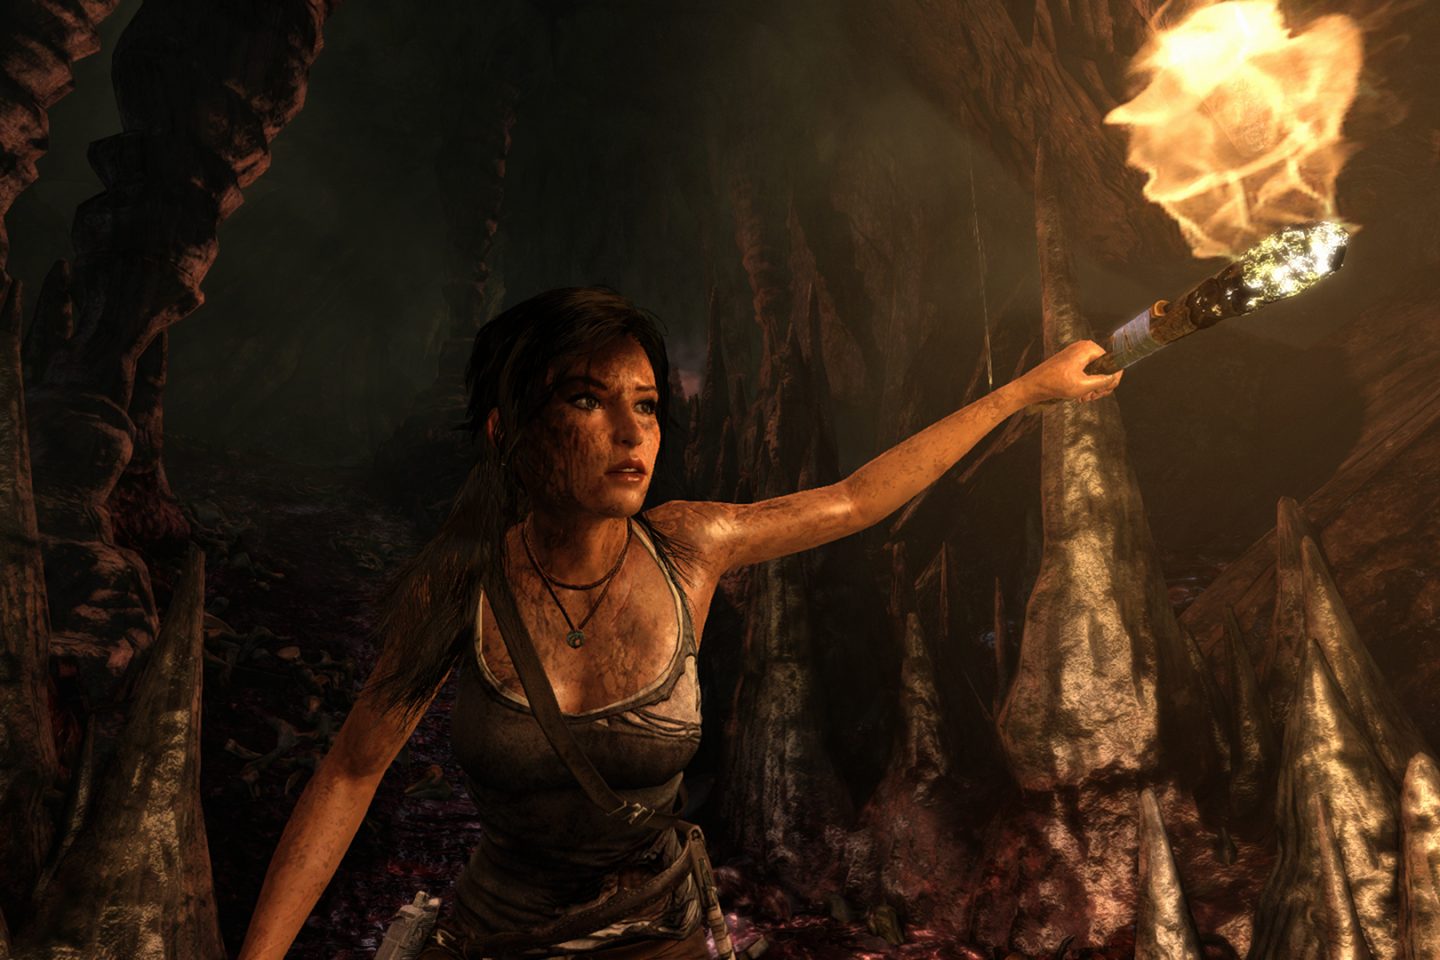 Lara Croft explores a cave.